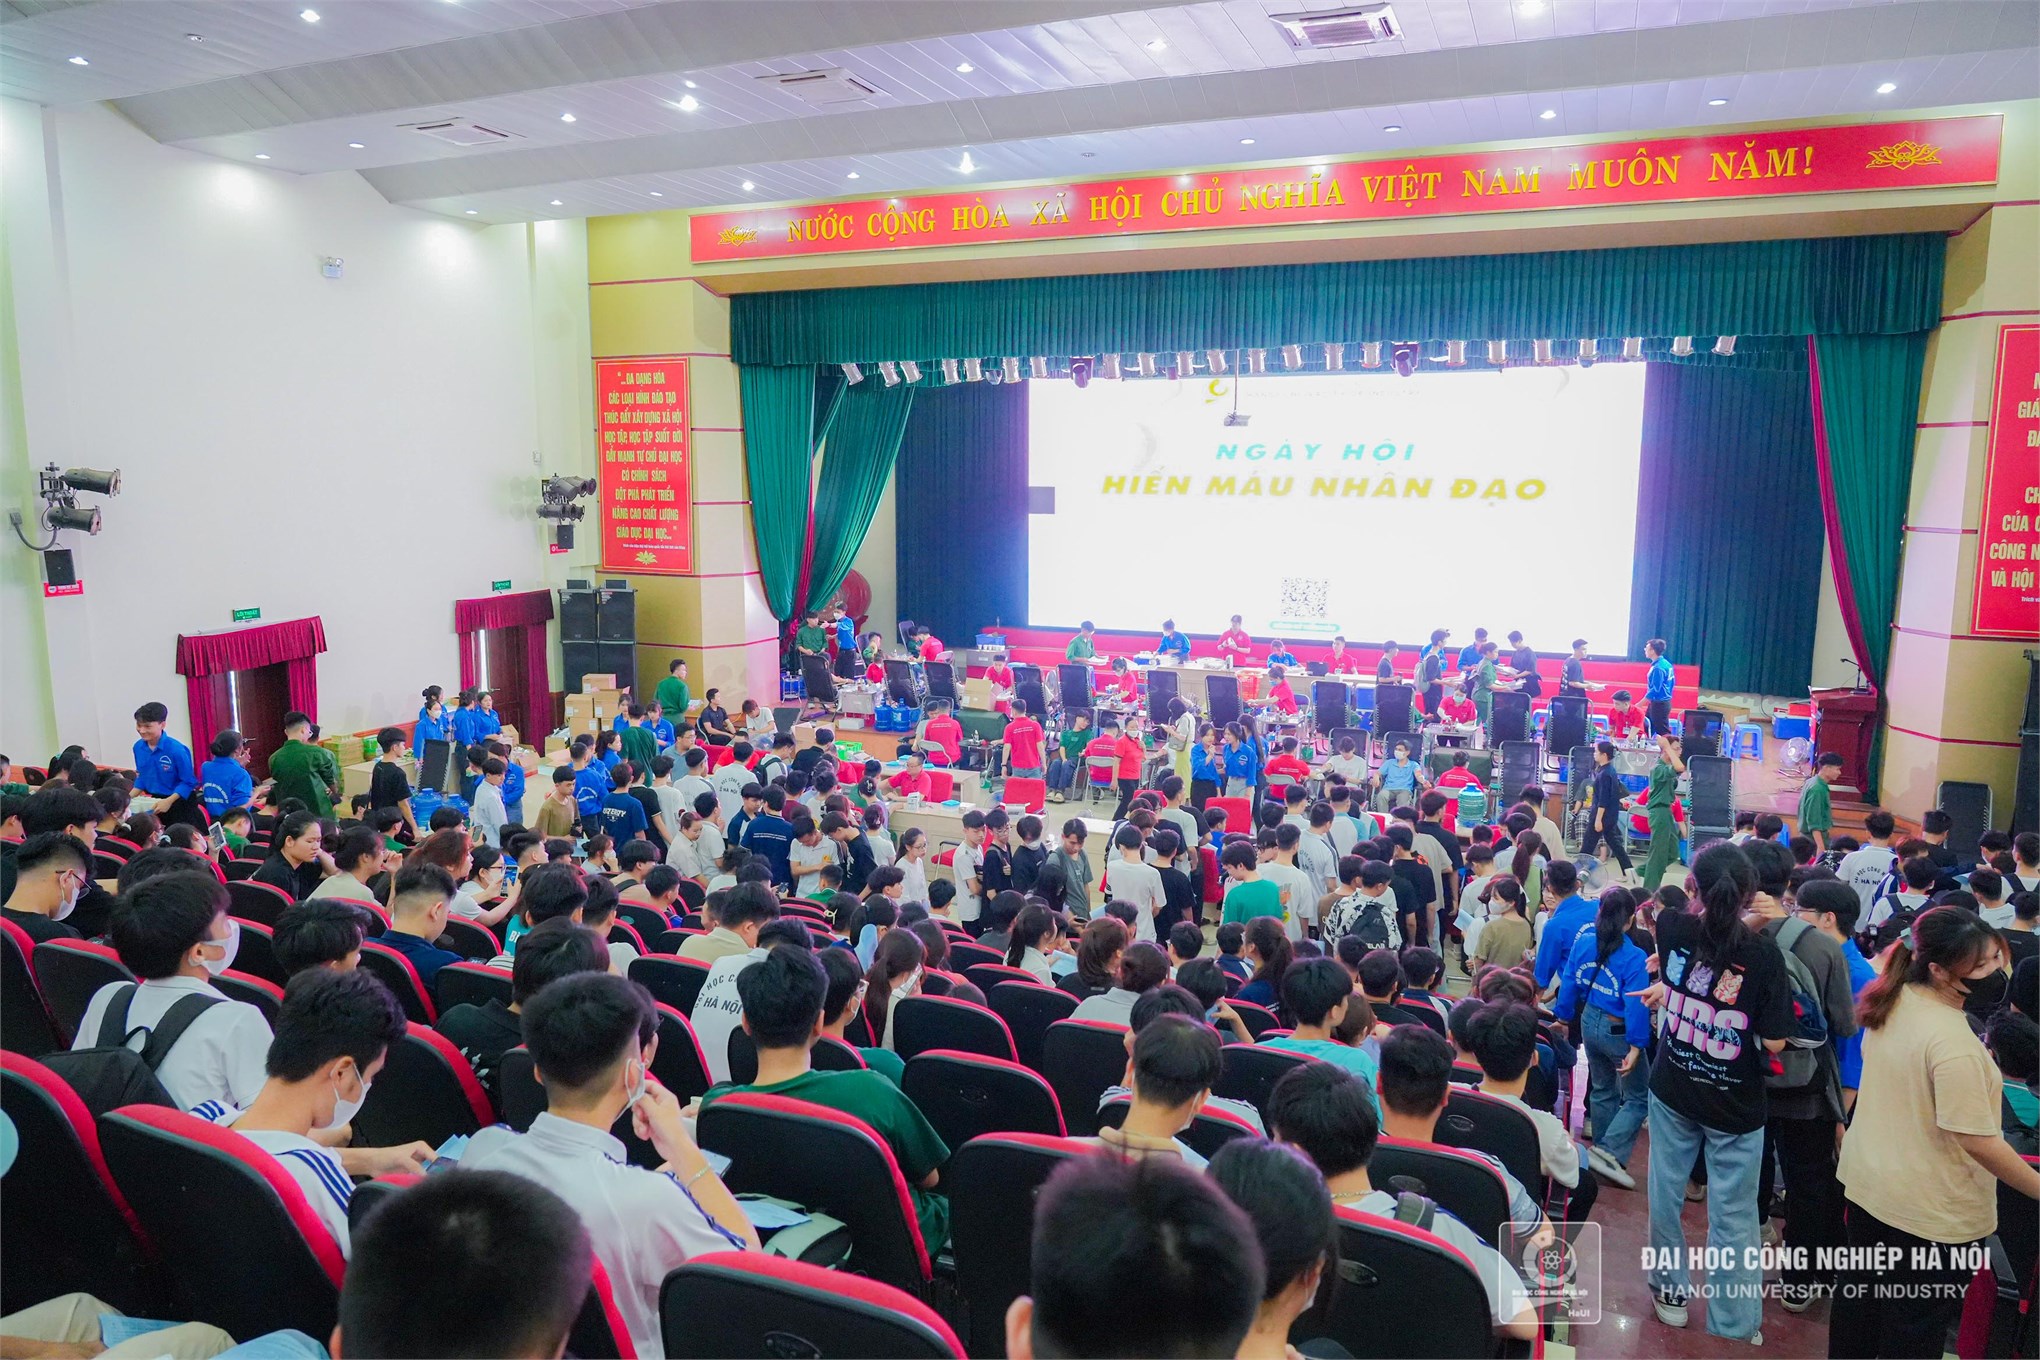 Hơn 700 cán bộ, giảng viên, sinh viên Đại học Công nghiêp Hà Nội tham gia Ngày hội Hiến máu nhân đạo 